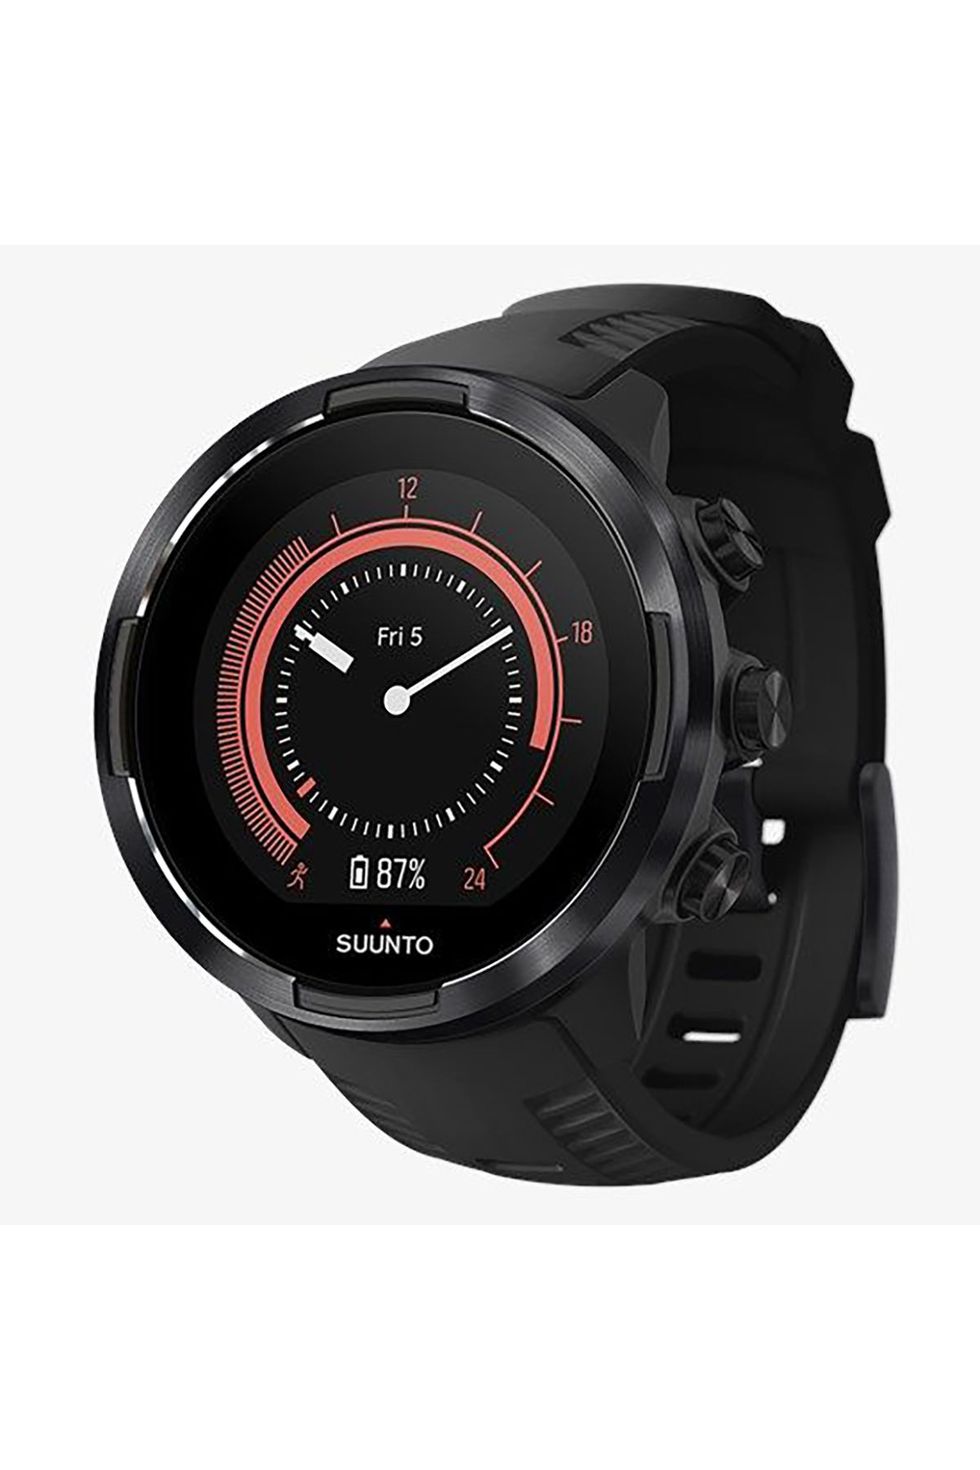 Suunto 9 Baro Next-Gen Multisport GPS Watch 